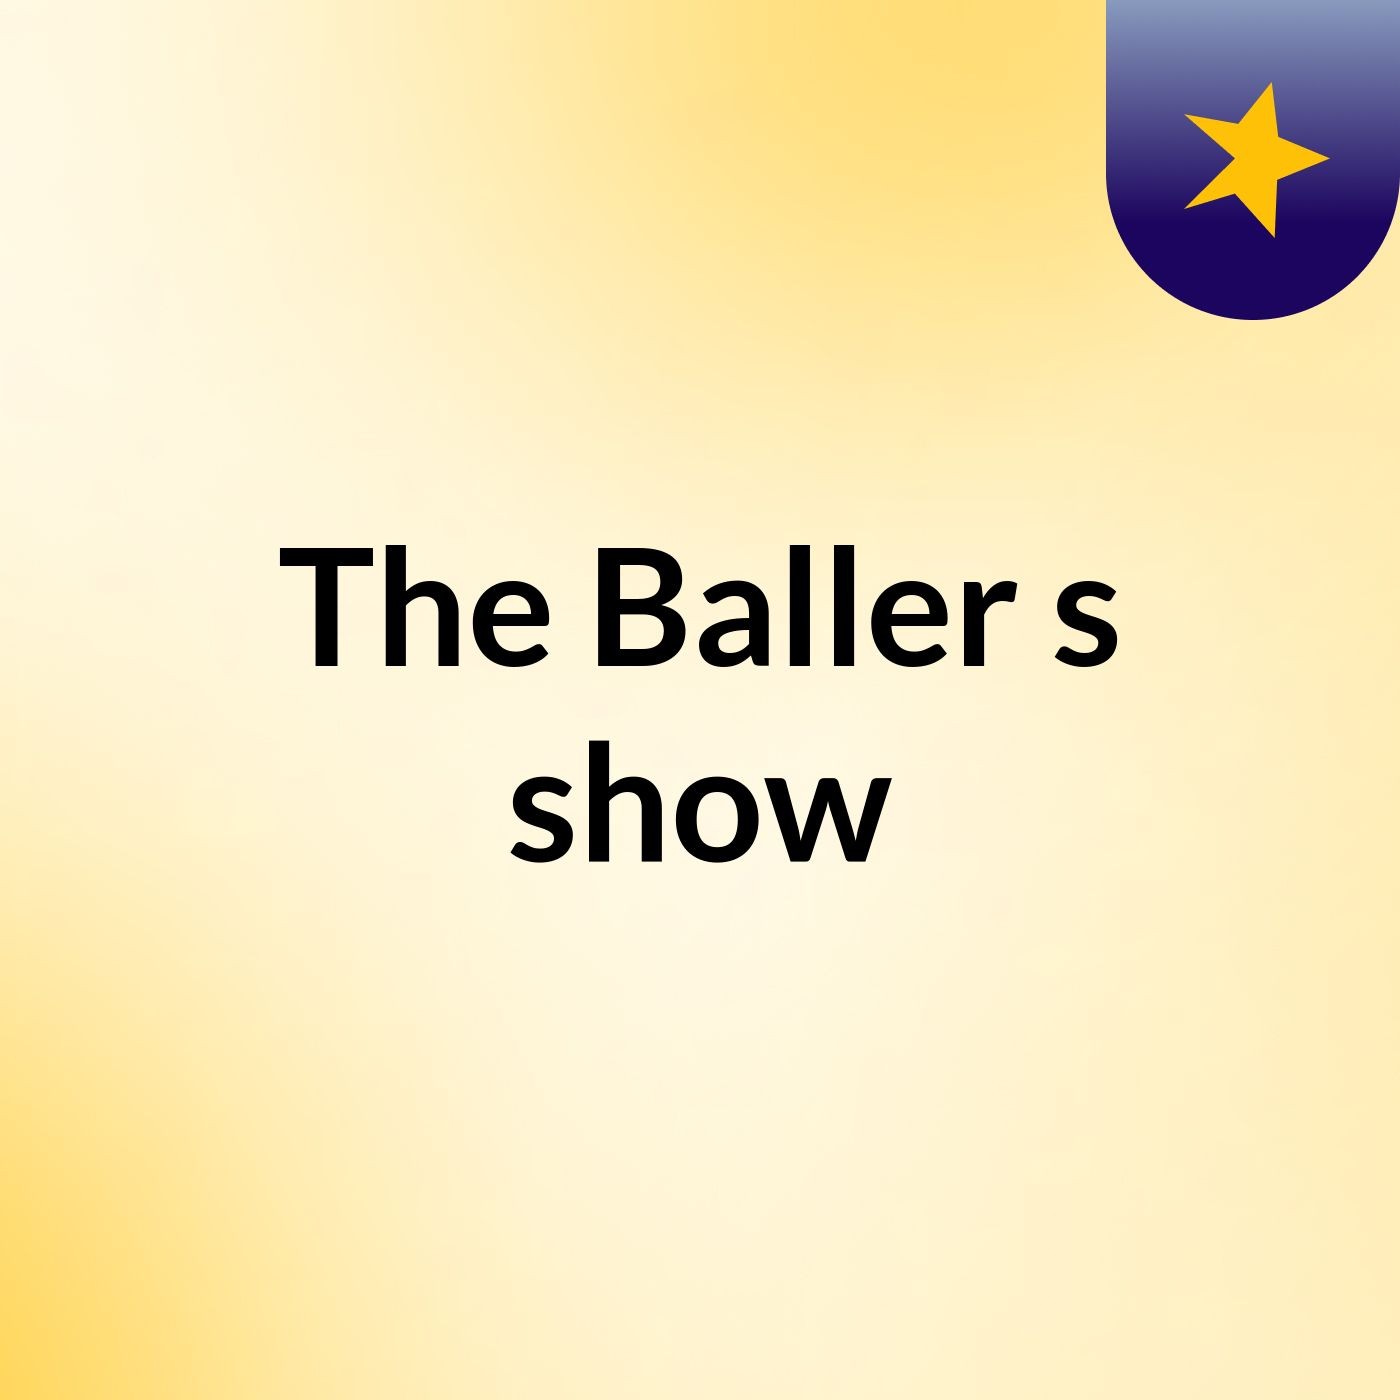 The Baller's show